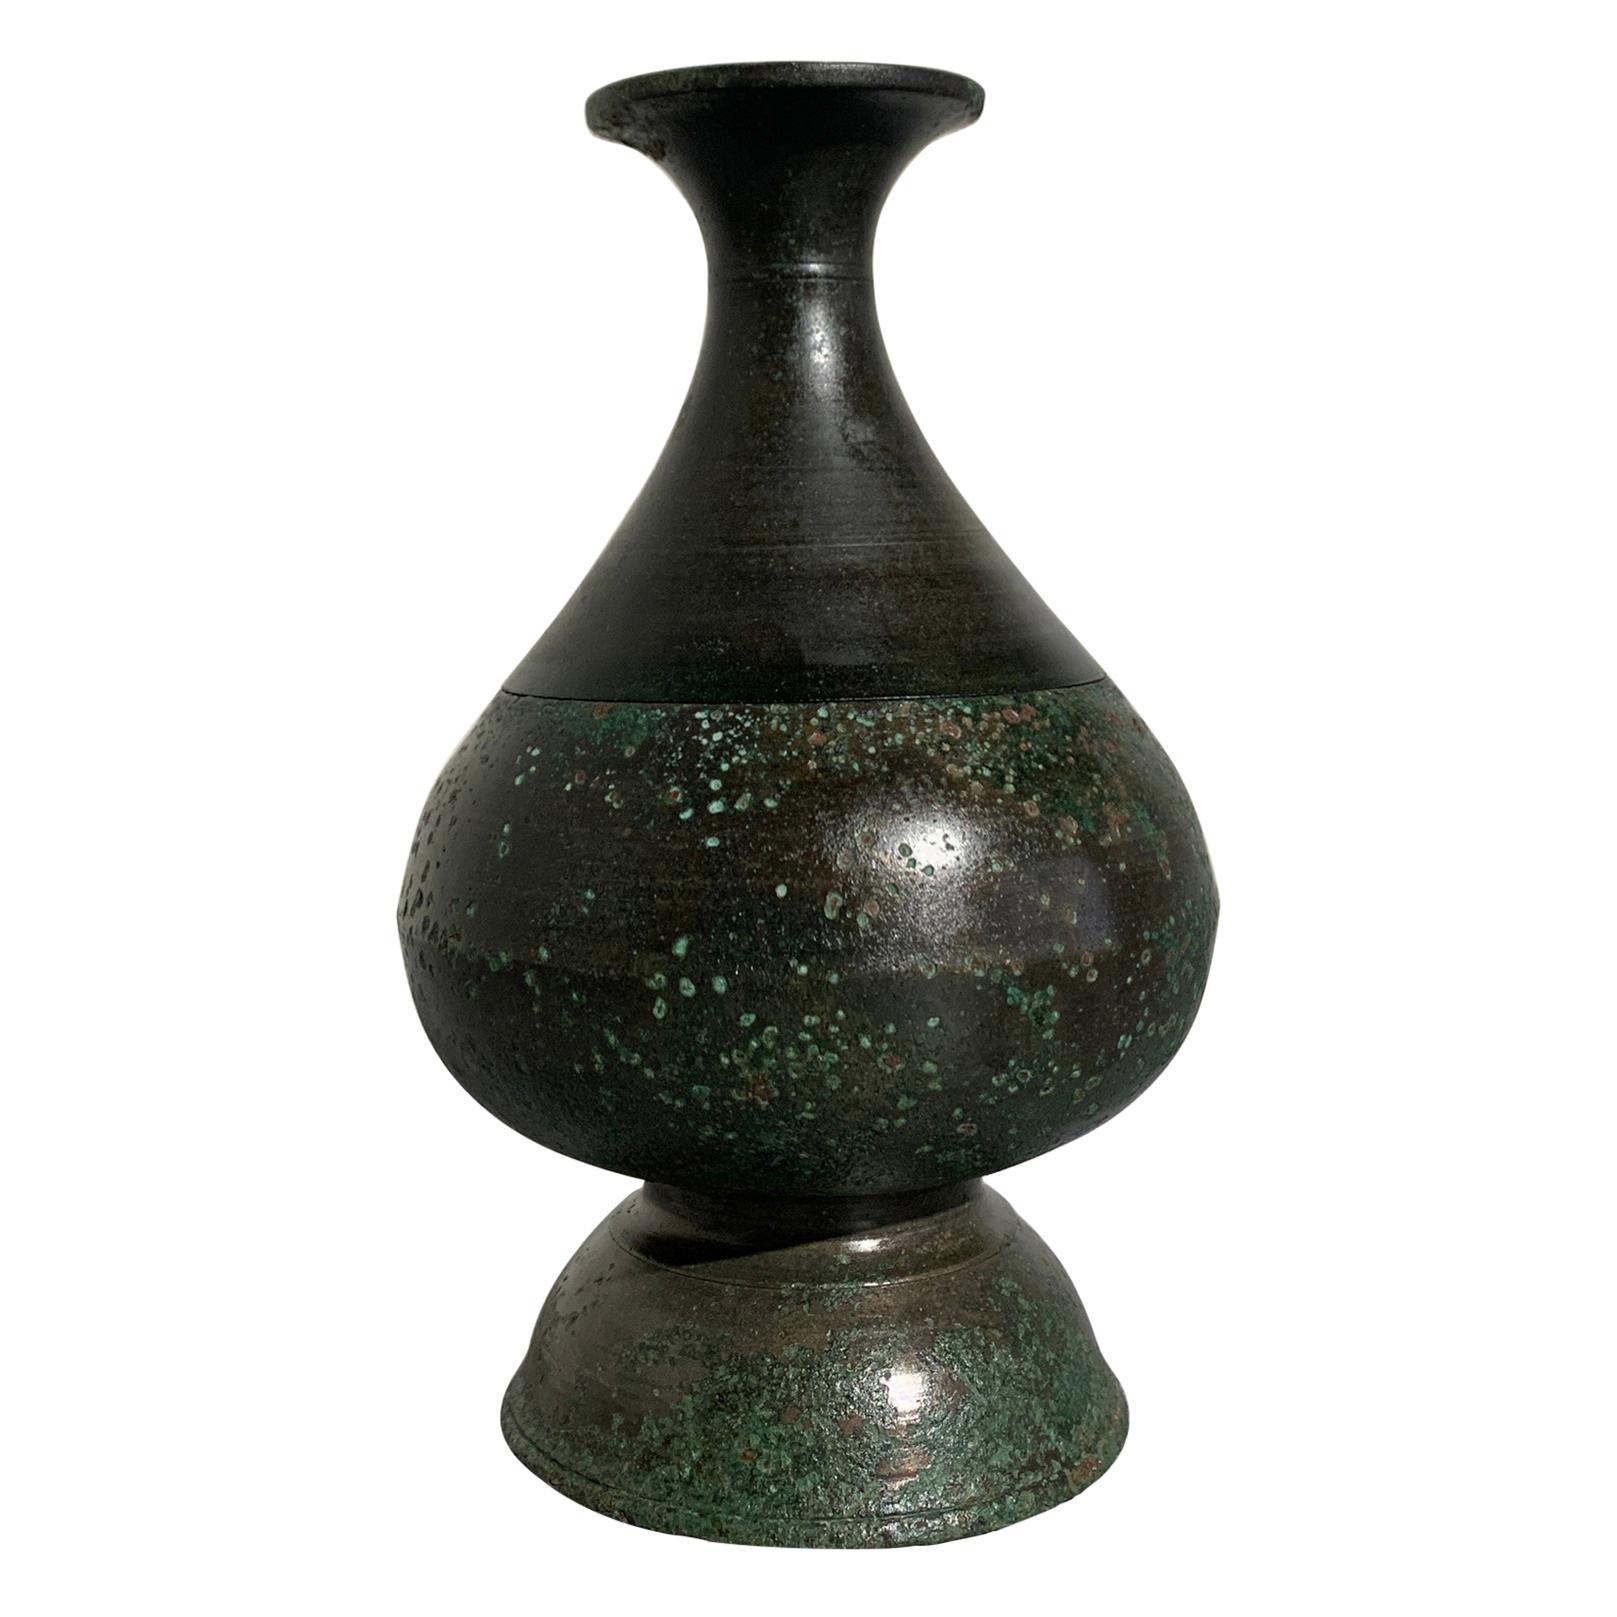 Vase bouteille en bronze cambodgien en deux parties, période Angkor, 12e-14e siècle